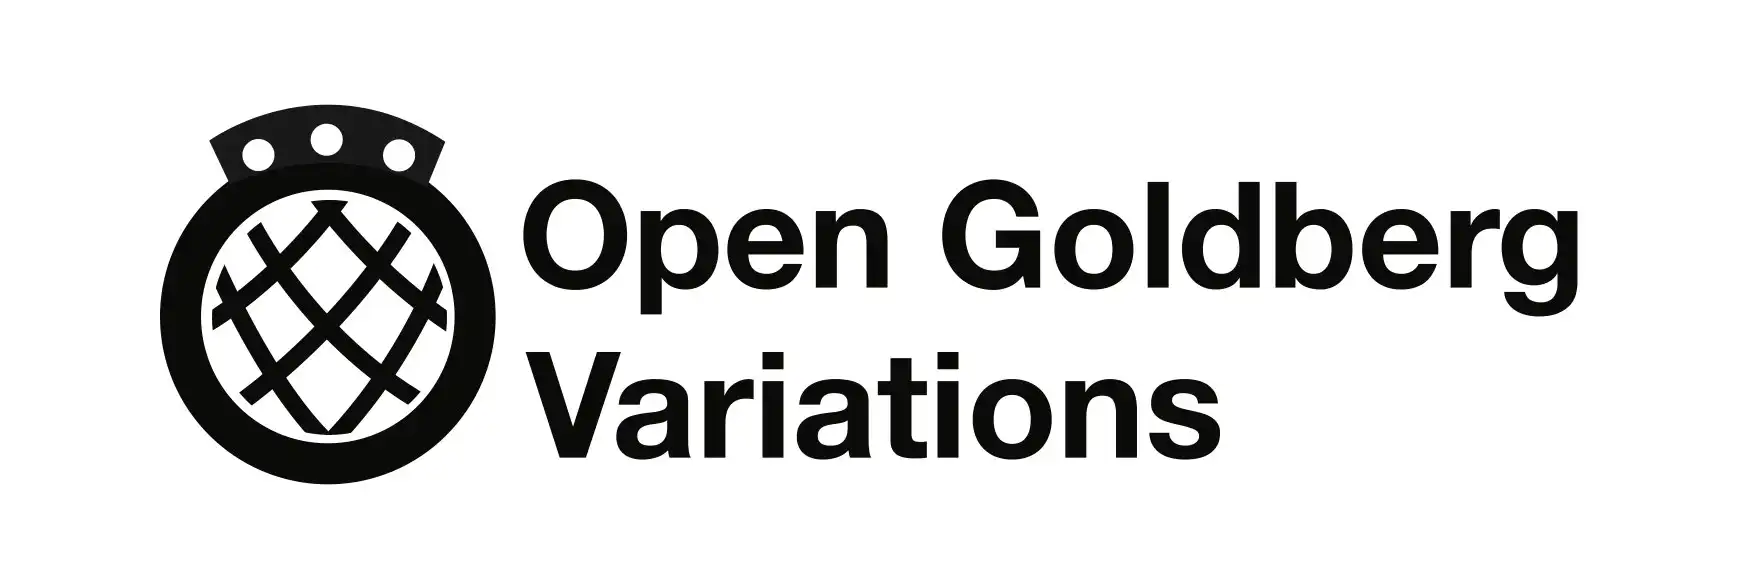 Open Goldberg Variations Logo